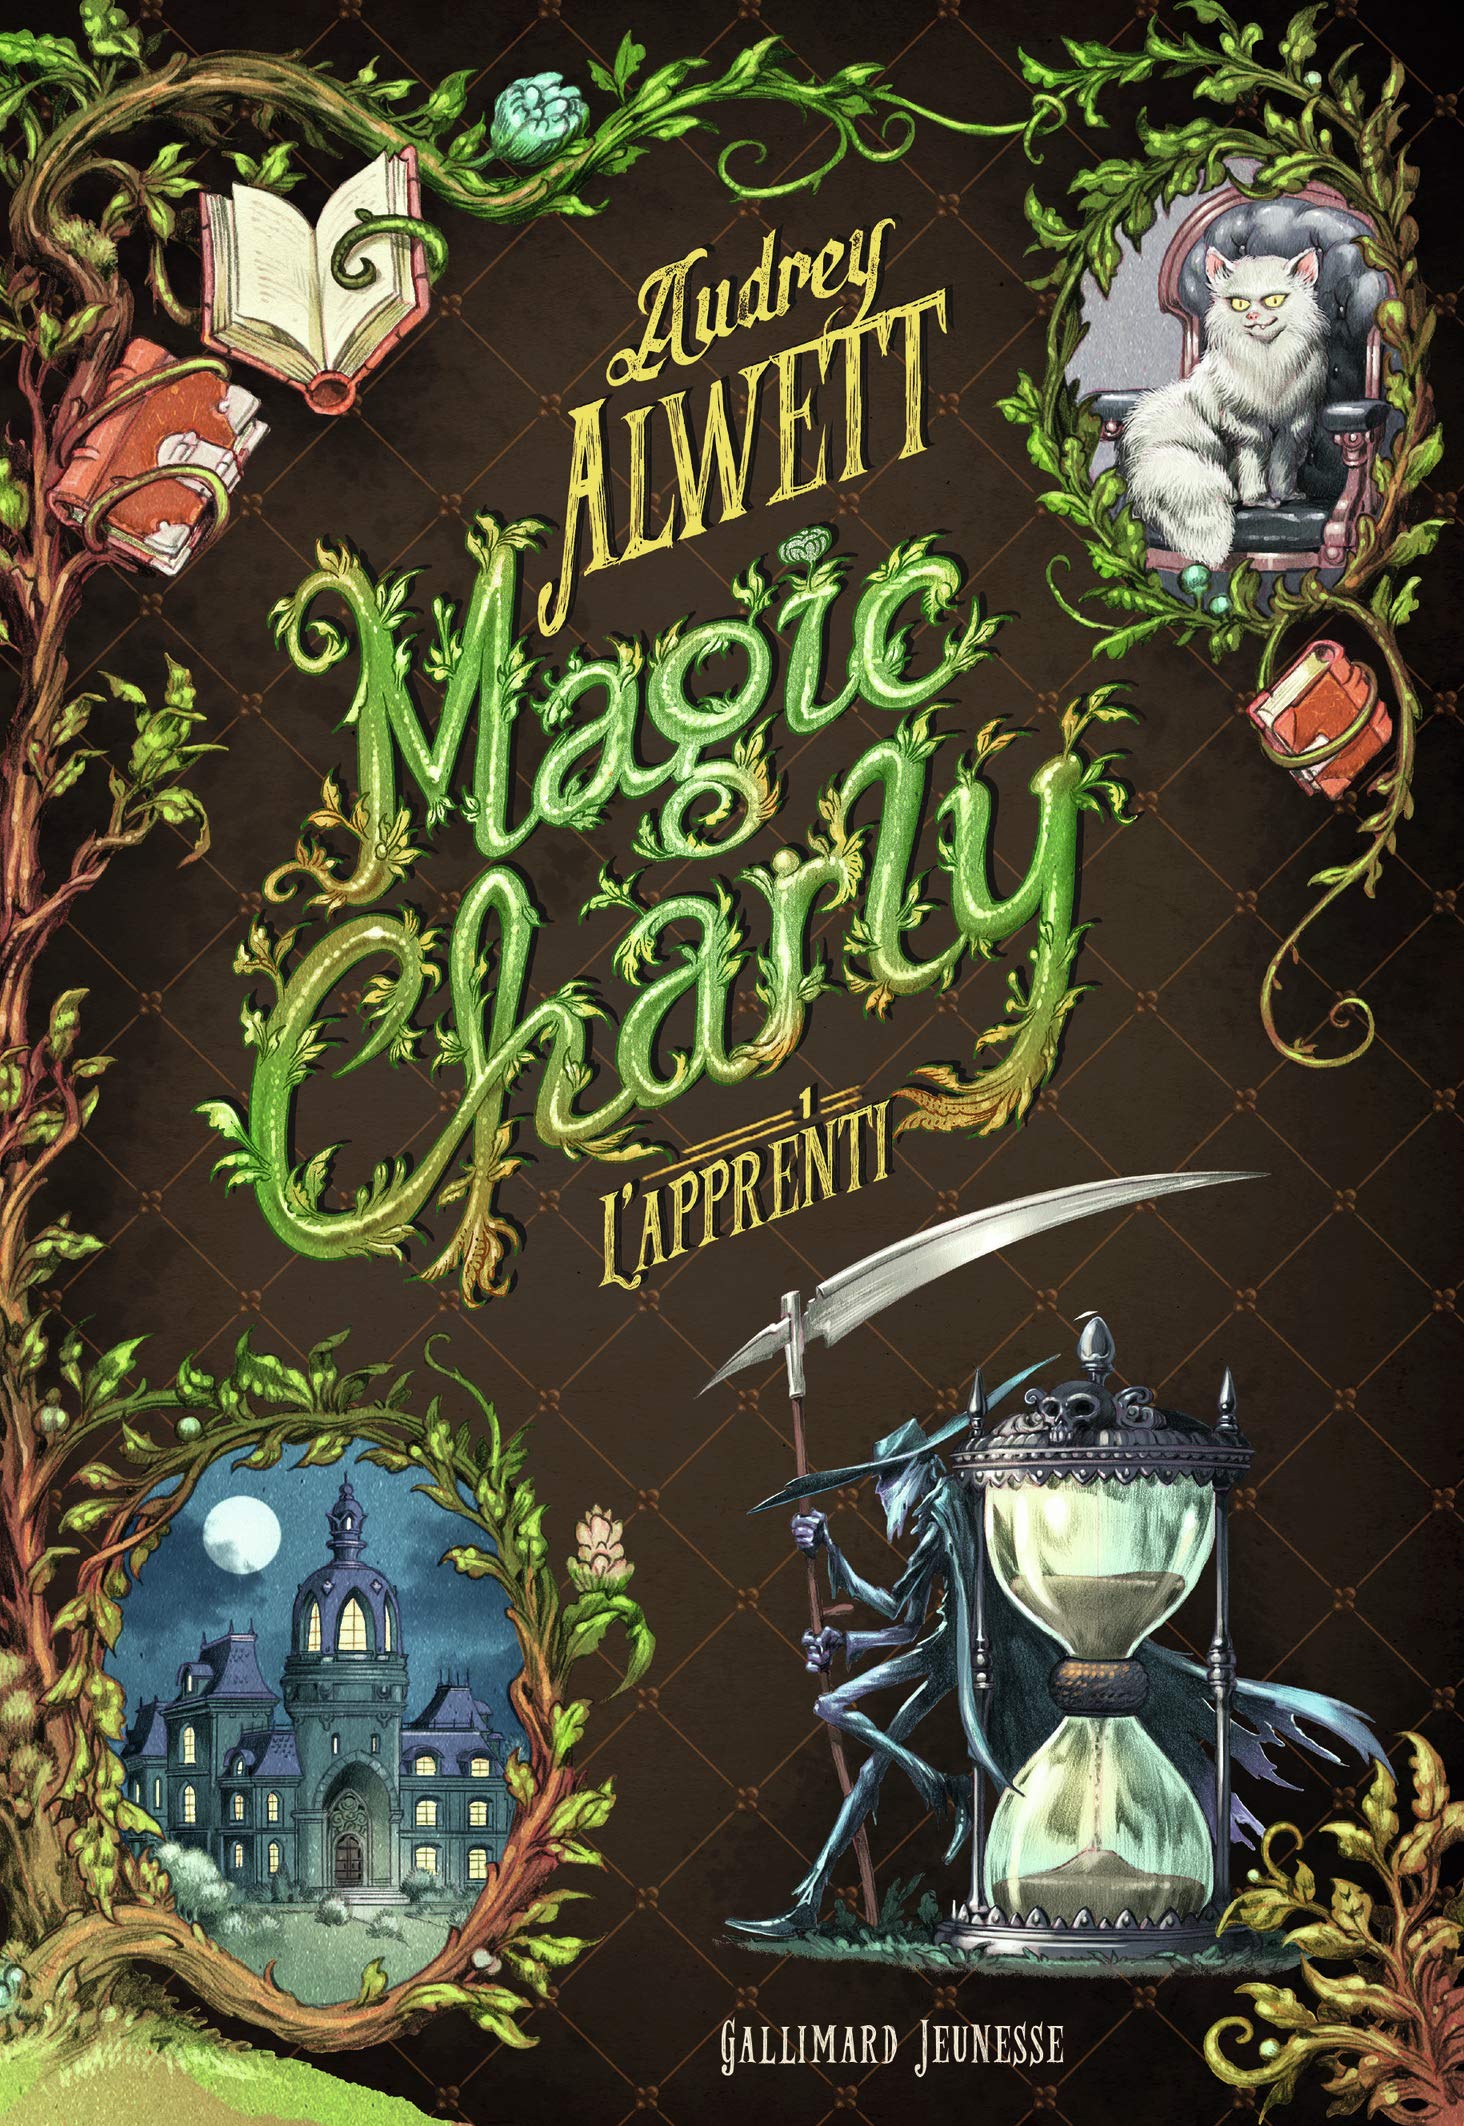 couvertures des 3 tomes de Magic Charly de Audrey Alwett